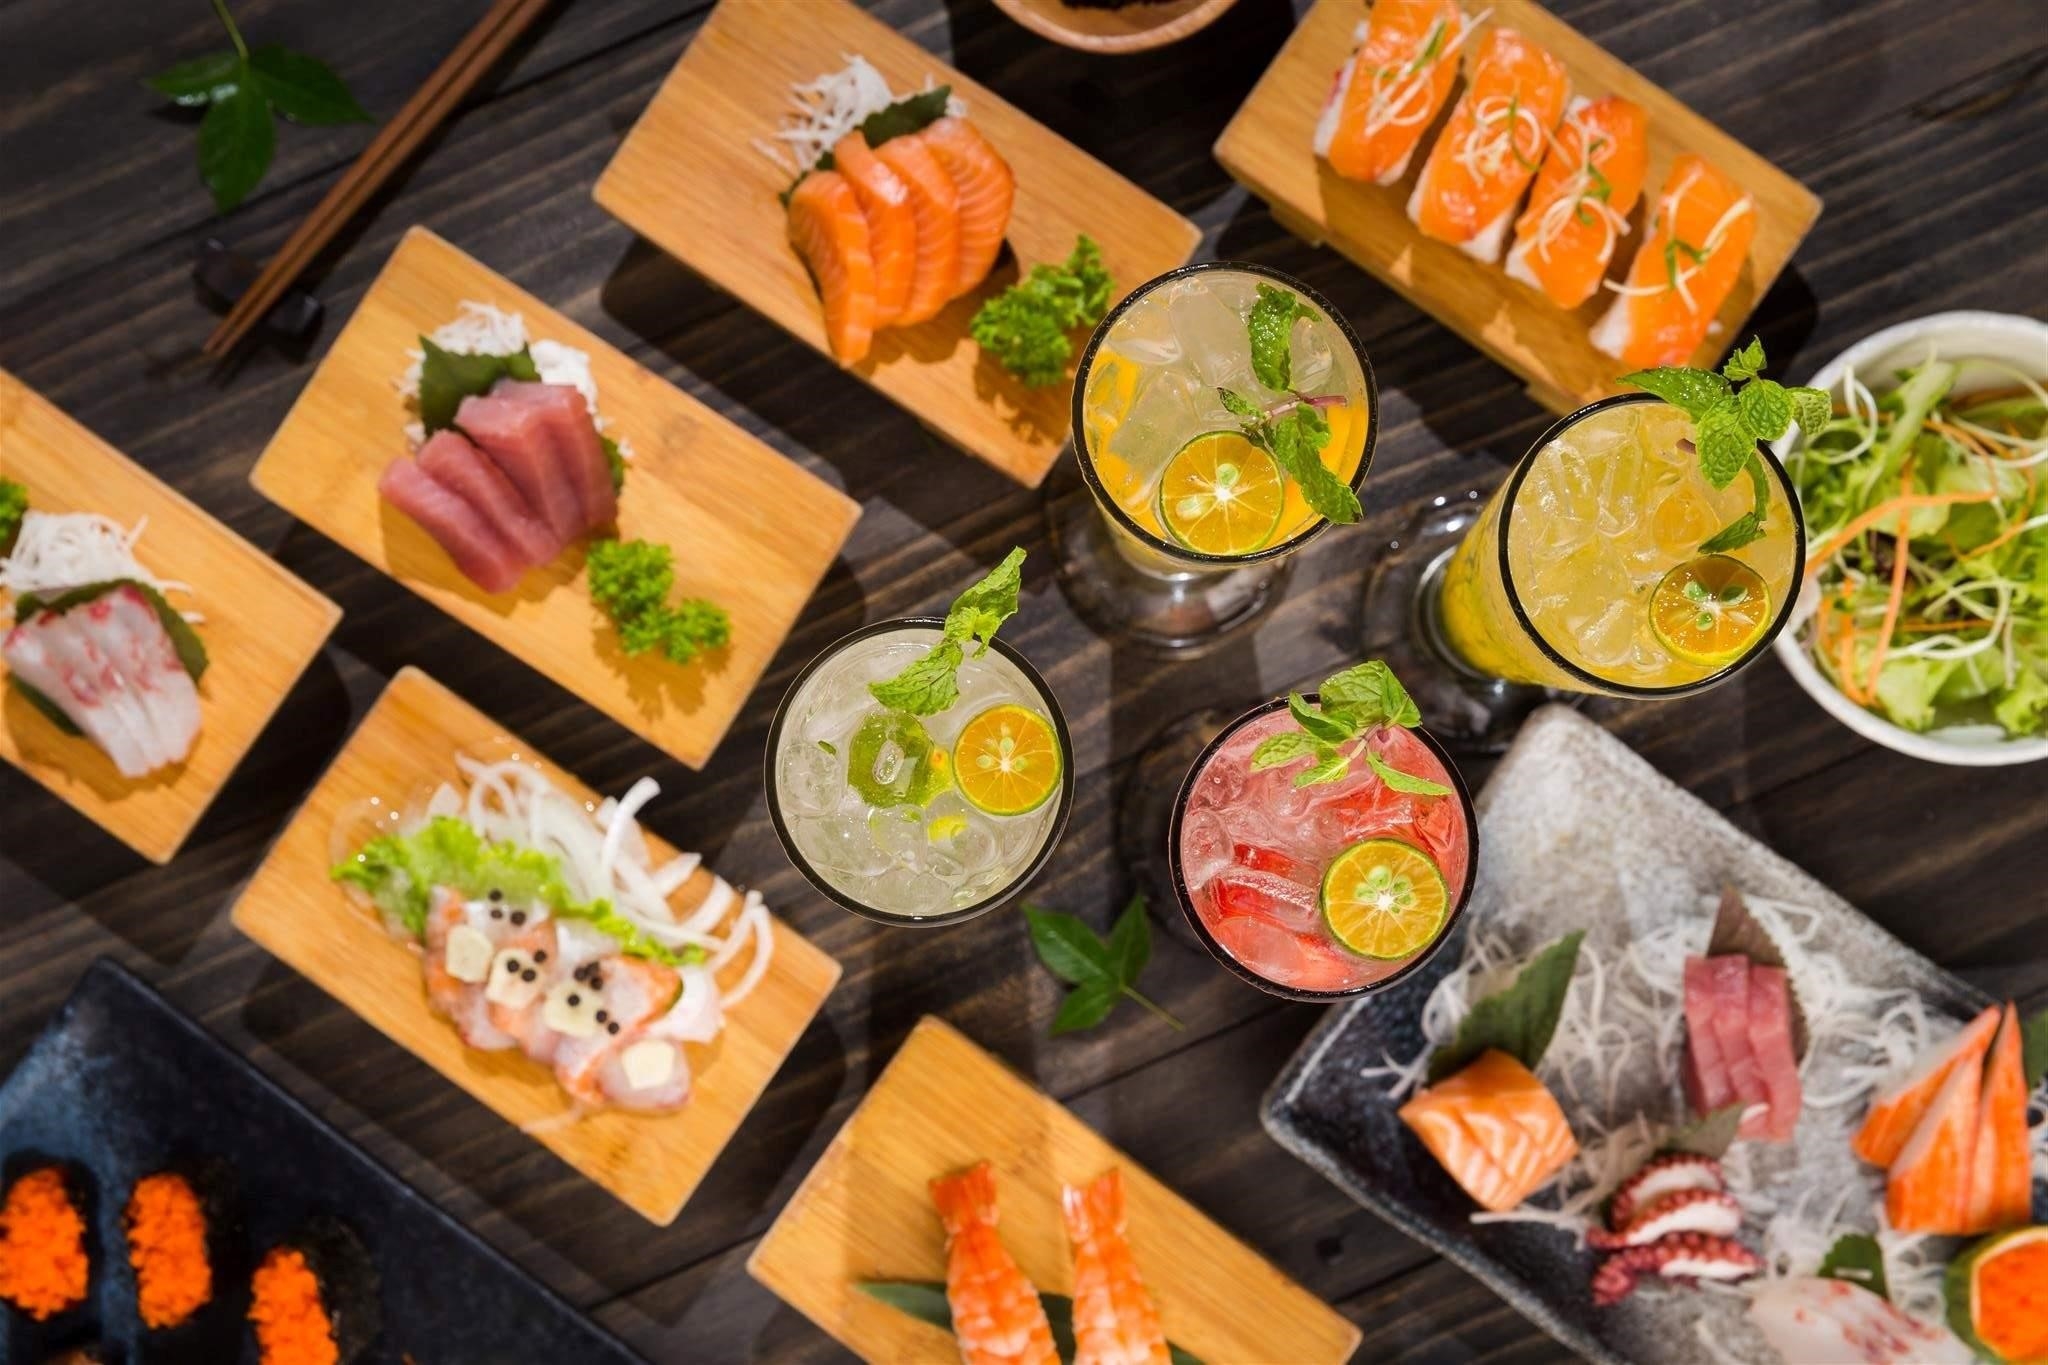 Set sushi và sashimi hấp dẫn là một món ăn Nhật Bản truyền thống, bao gồm các loại hải sản tươi ngon và cắt thành từng miếng nhỏ đẹp mắt. Món ăn này không chỉ hấp dẫn về hương vị mà còn mang đến một trải nghiệm thị giác đặc biệt, khi được trình bày tinh tế và màu sắc đa dạng.